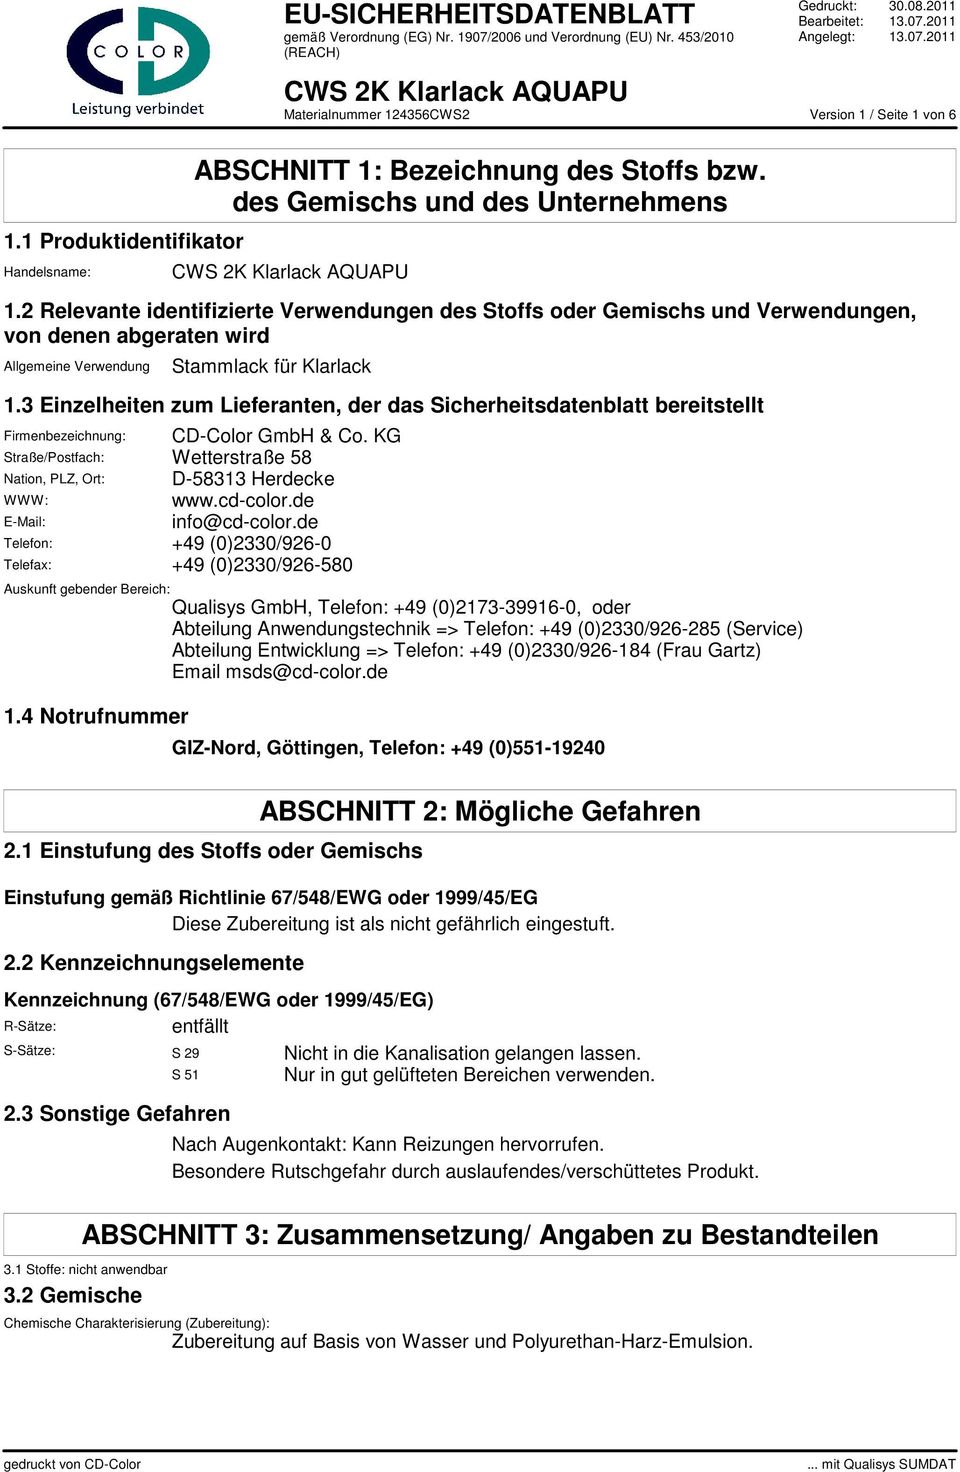 3 Einzelheiten zum Lieferanten, der das Sicherheitsdatenblatt bereitstellt Firmenbezeichnung: CD-Color GmbH & Co. KG Straße/Postfach: Wetterstraße 58 Nation, PLZ, Ort: D-58313 Herdecke WWW: www.